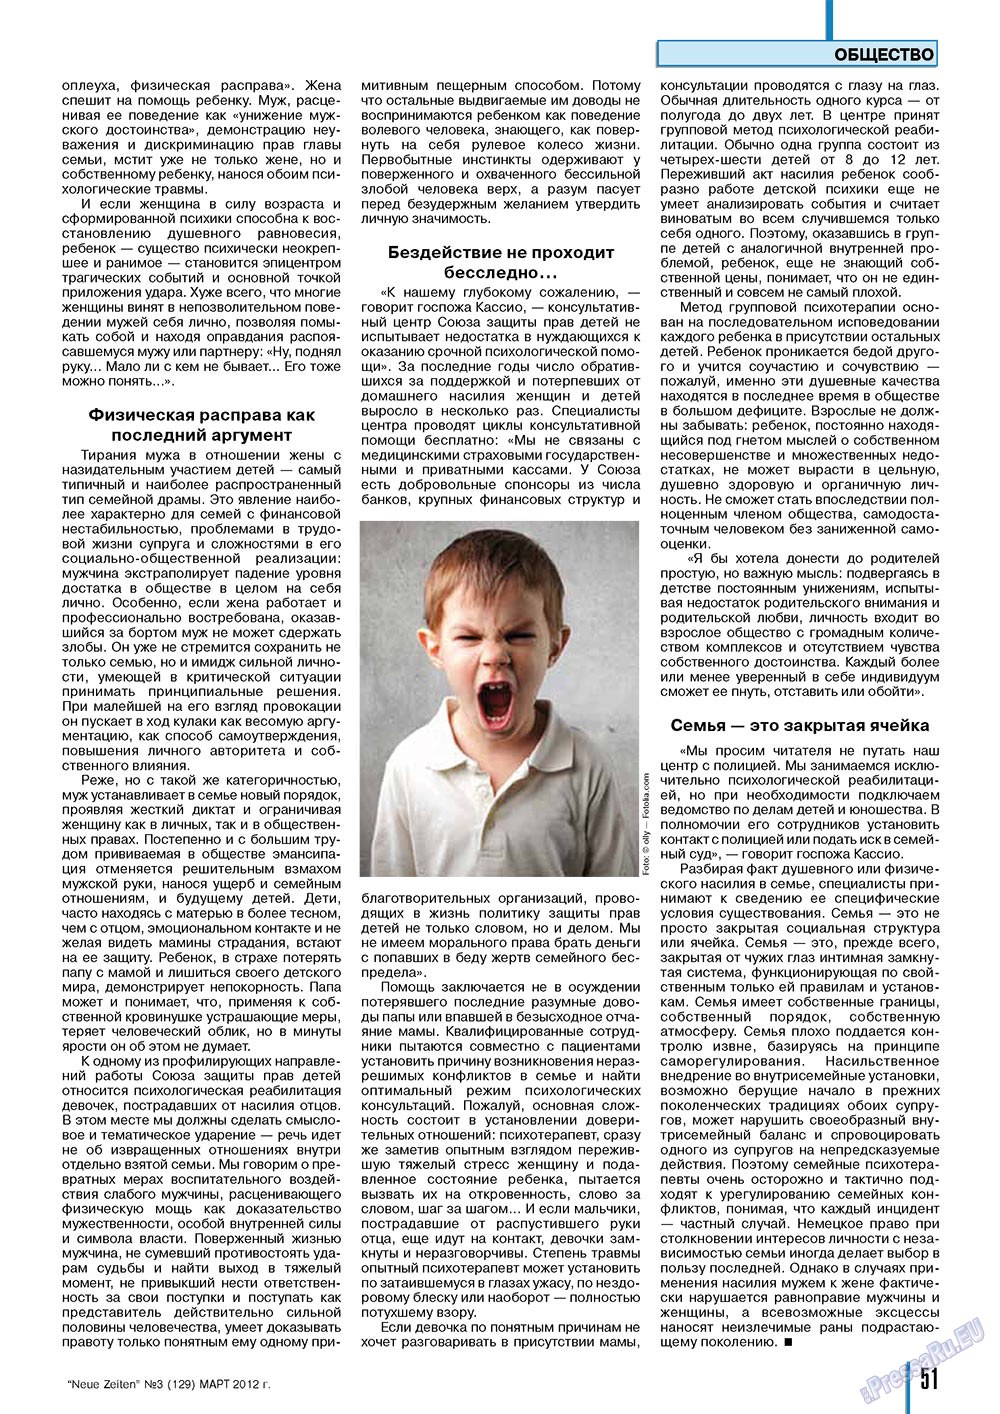 Neue Zeiten, журнал. 2012 №3 стр.51